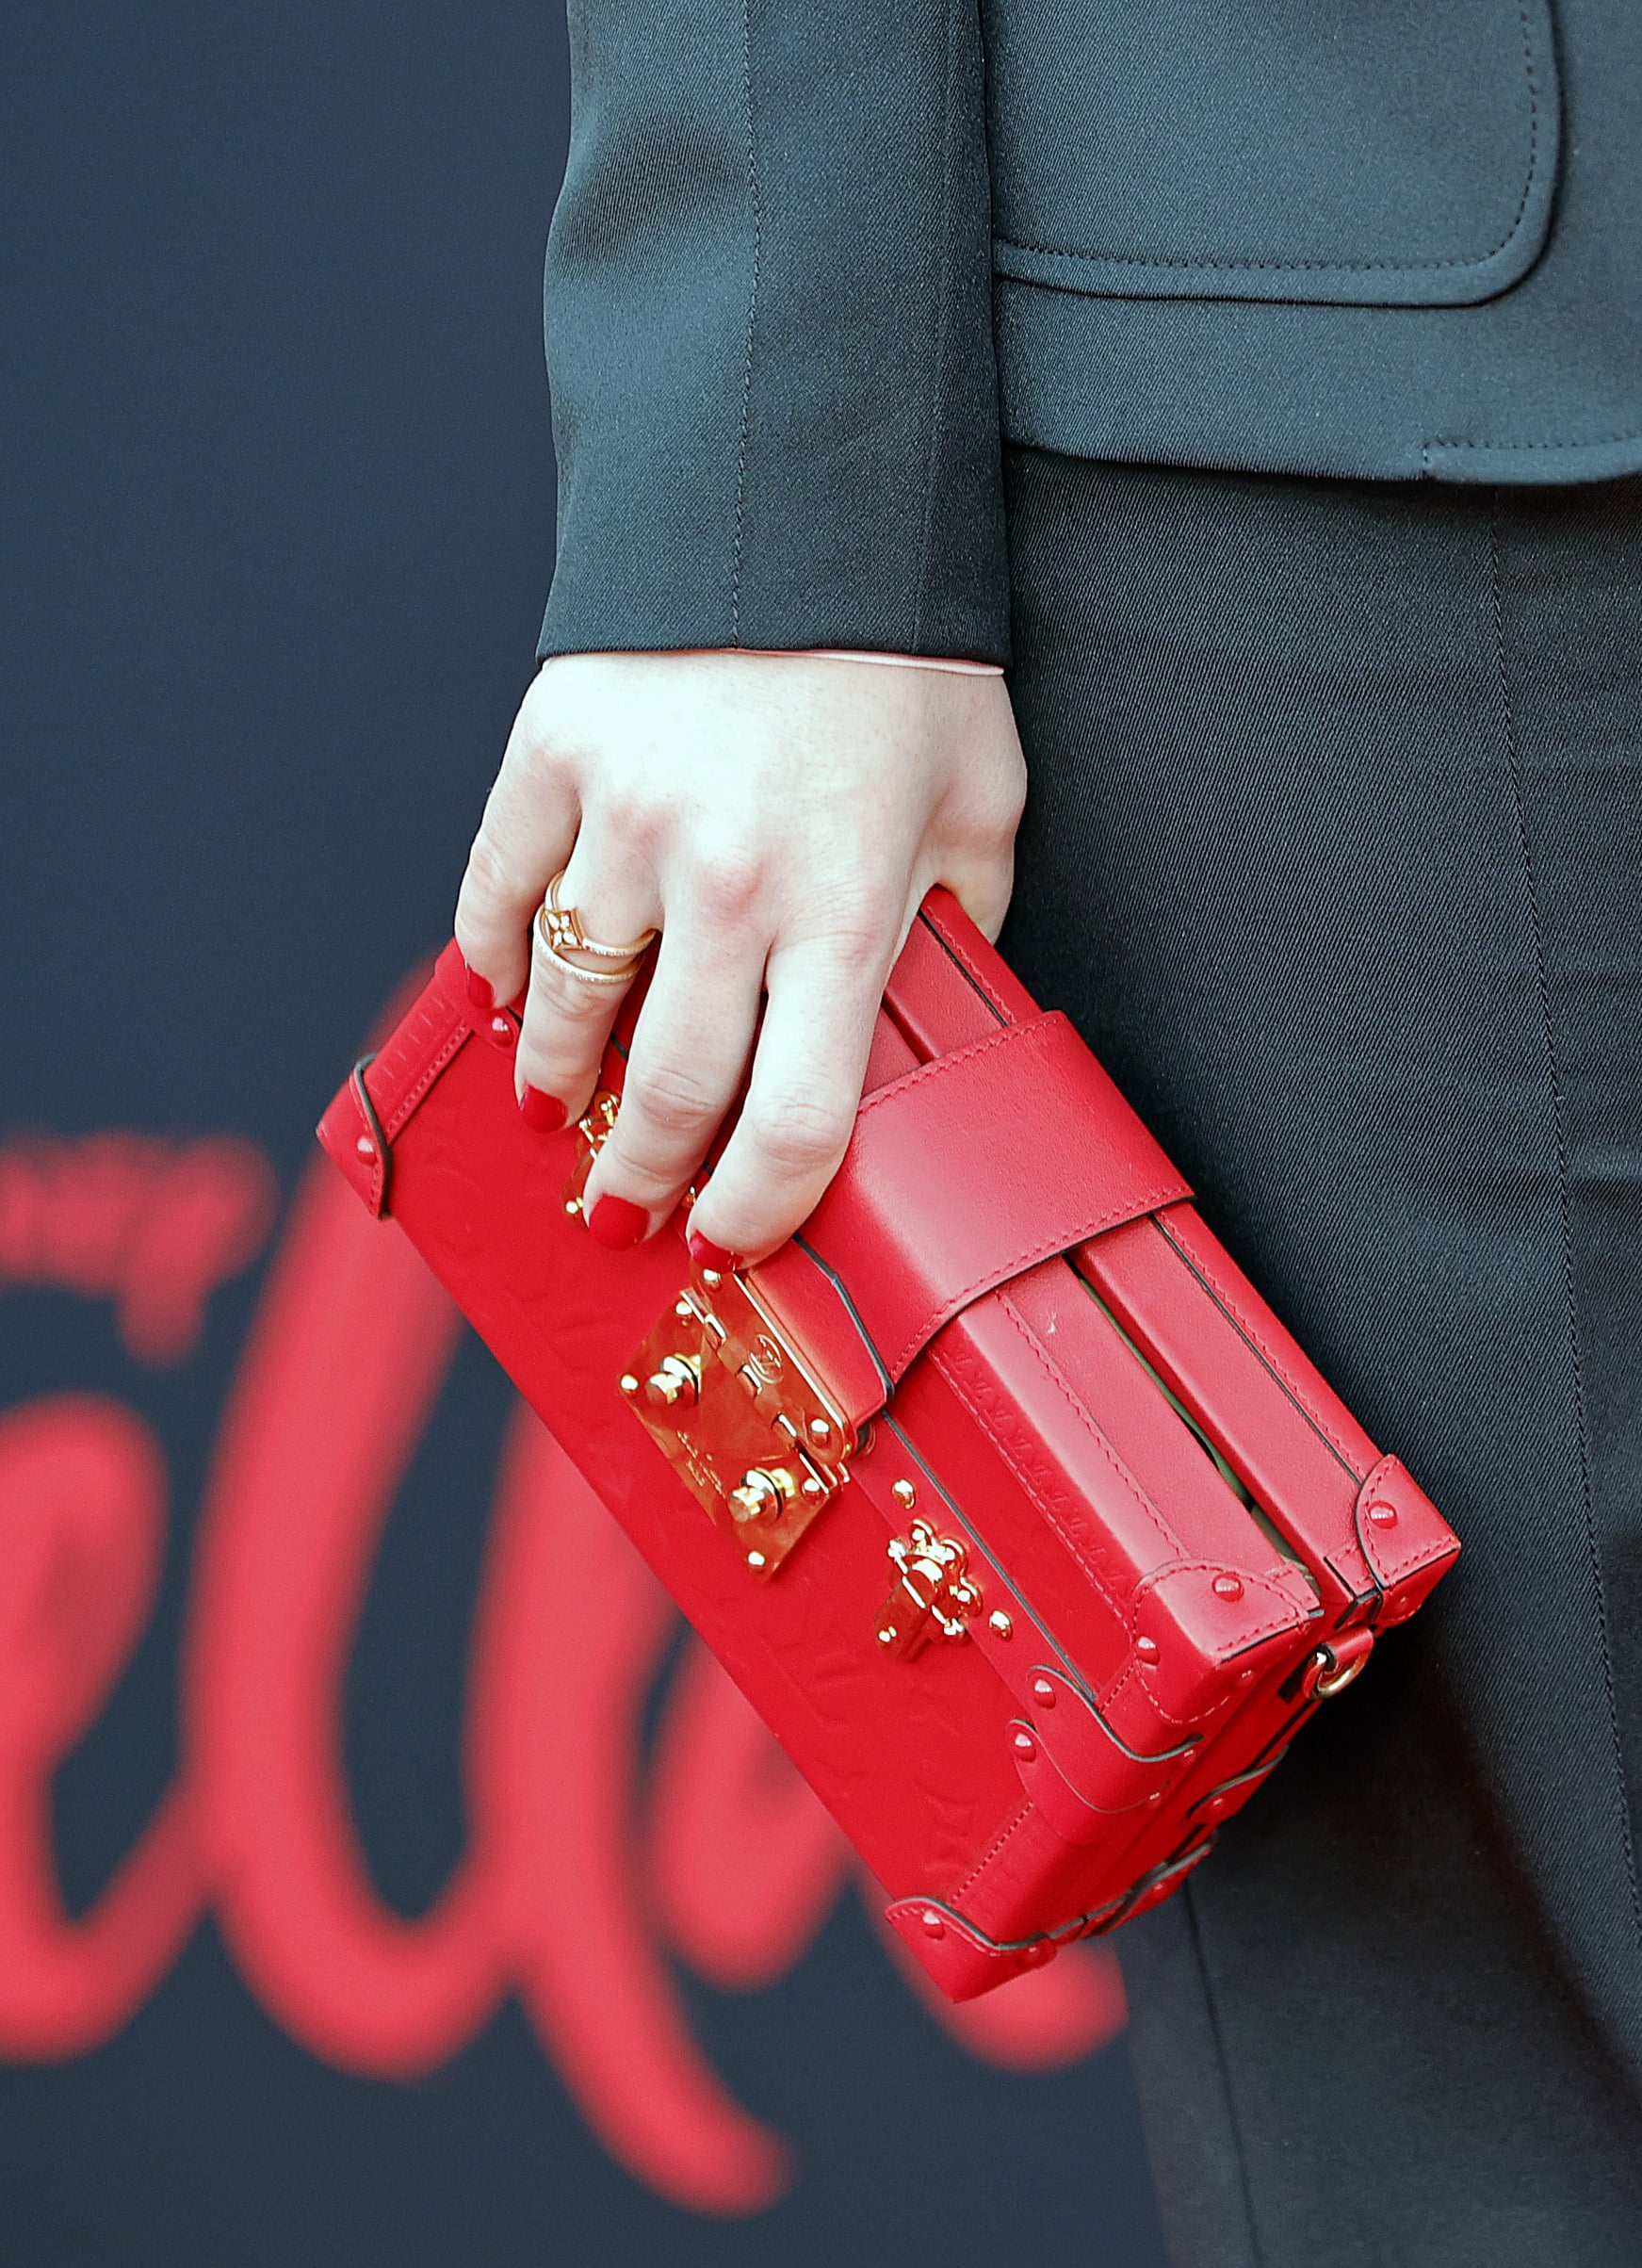 Emma-Stone-Cruella-World-Premiere-Red-Carpet-Fashion-Louis-Vuitton